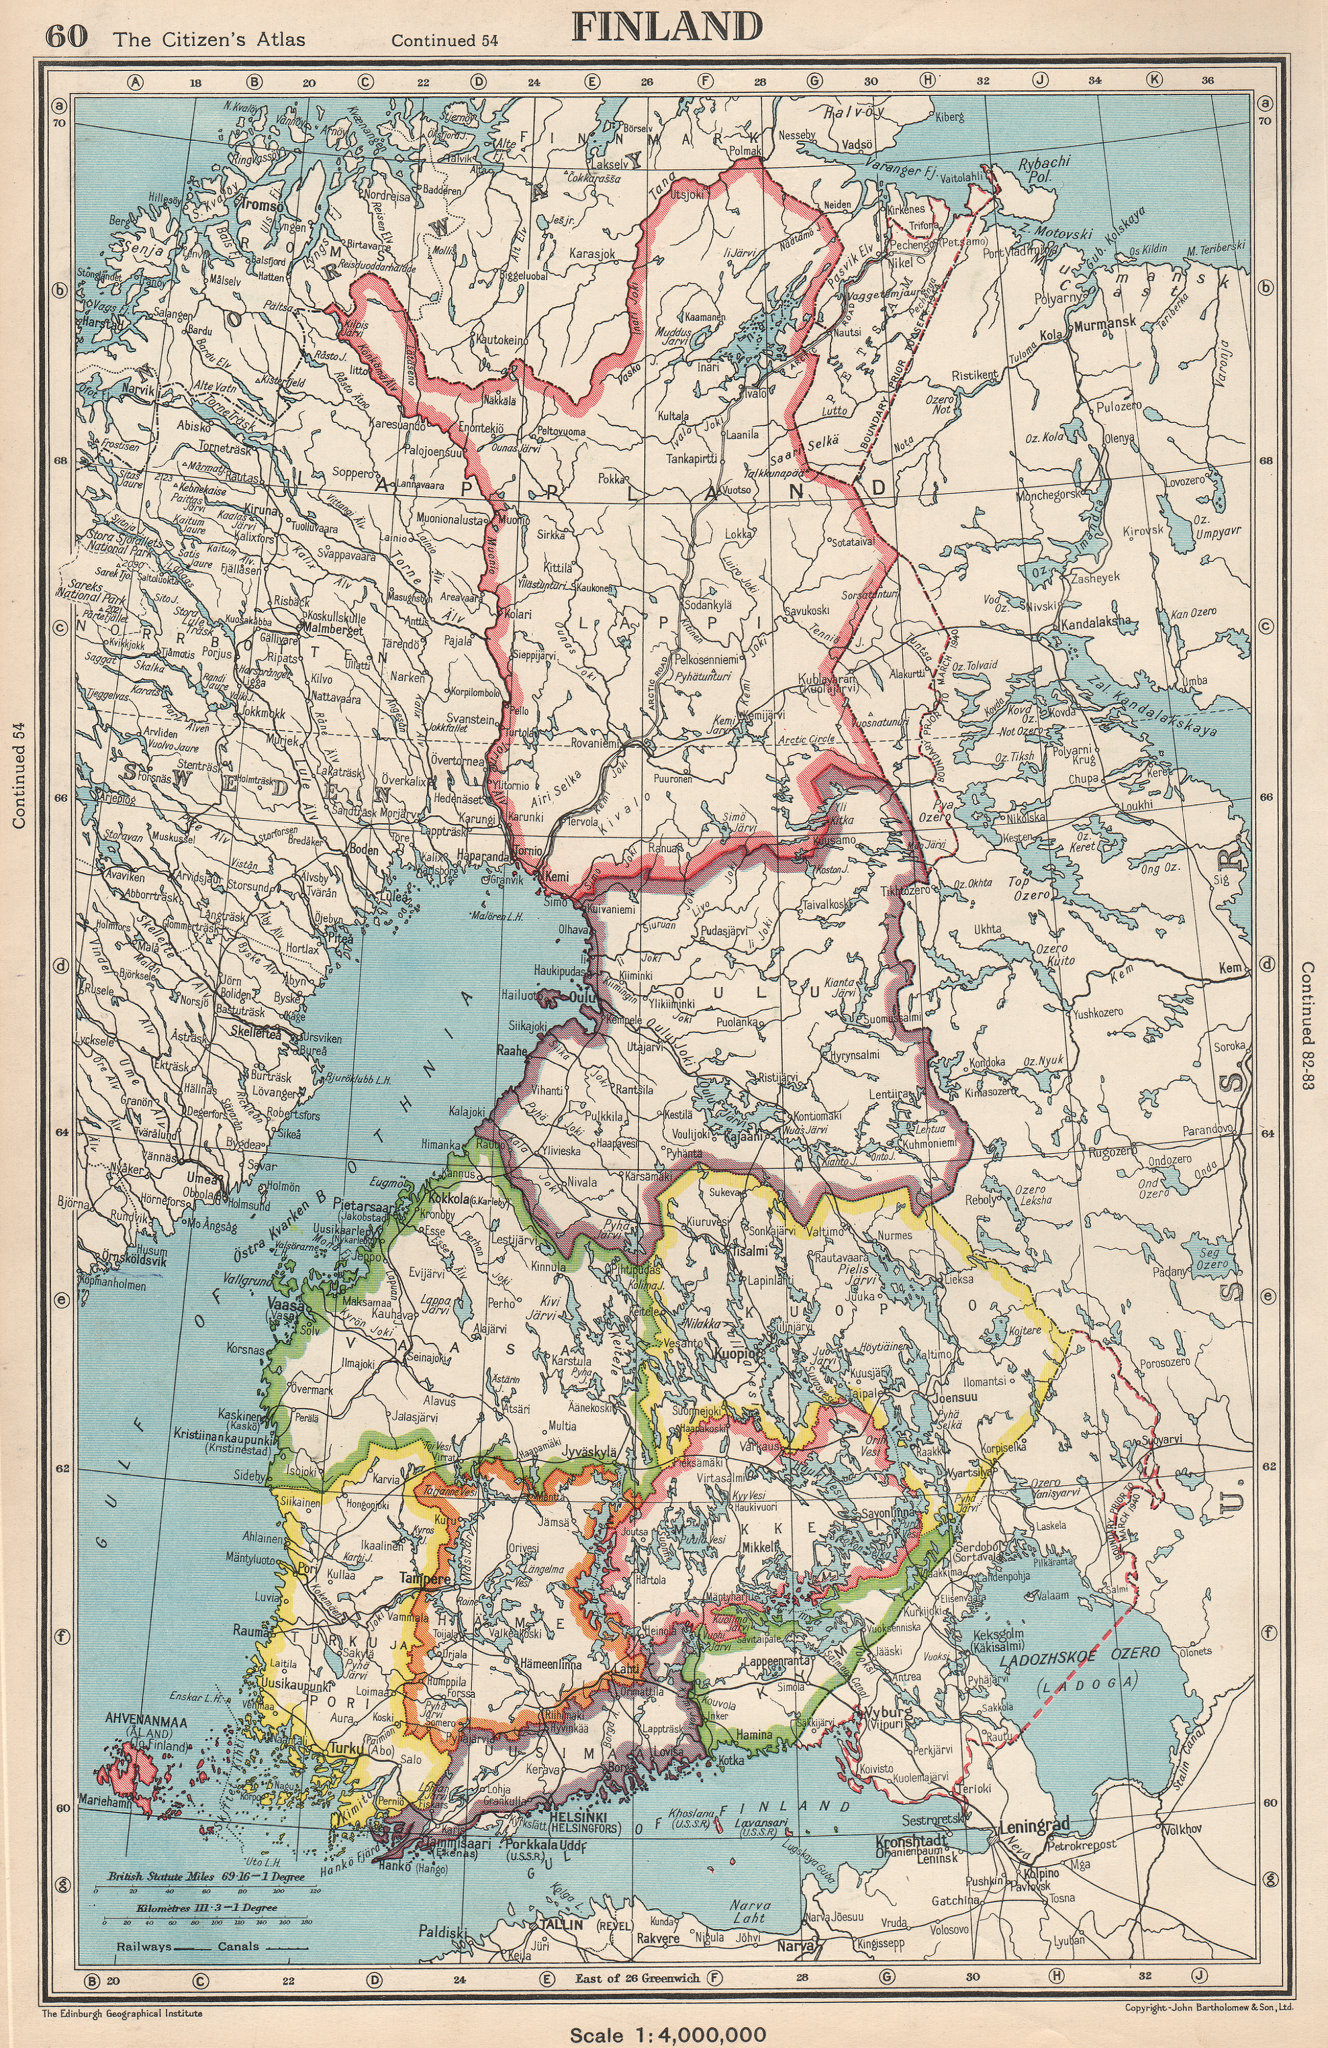 Finland 1912 map Tampere/Tammerfors town/city plan kaupunki kartta suunnitelma 